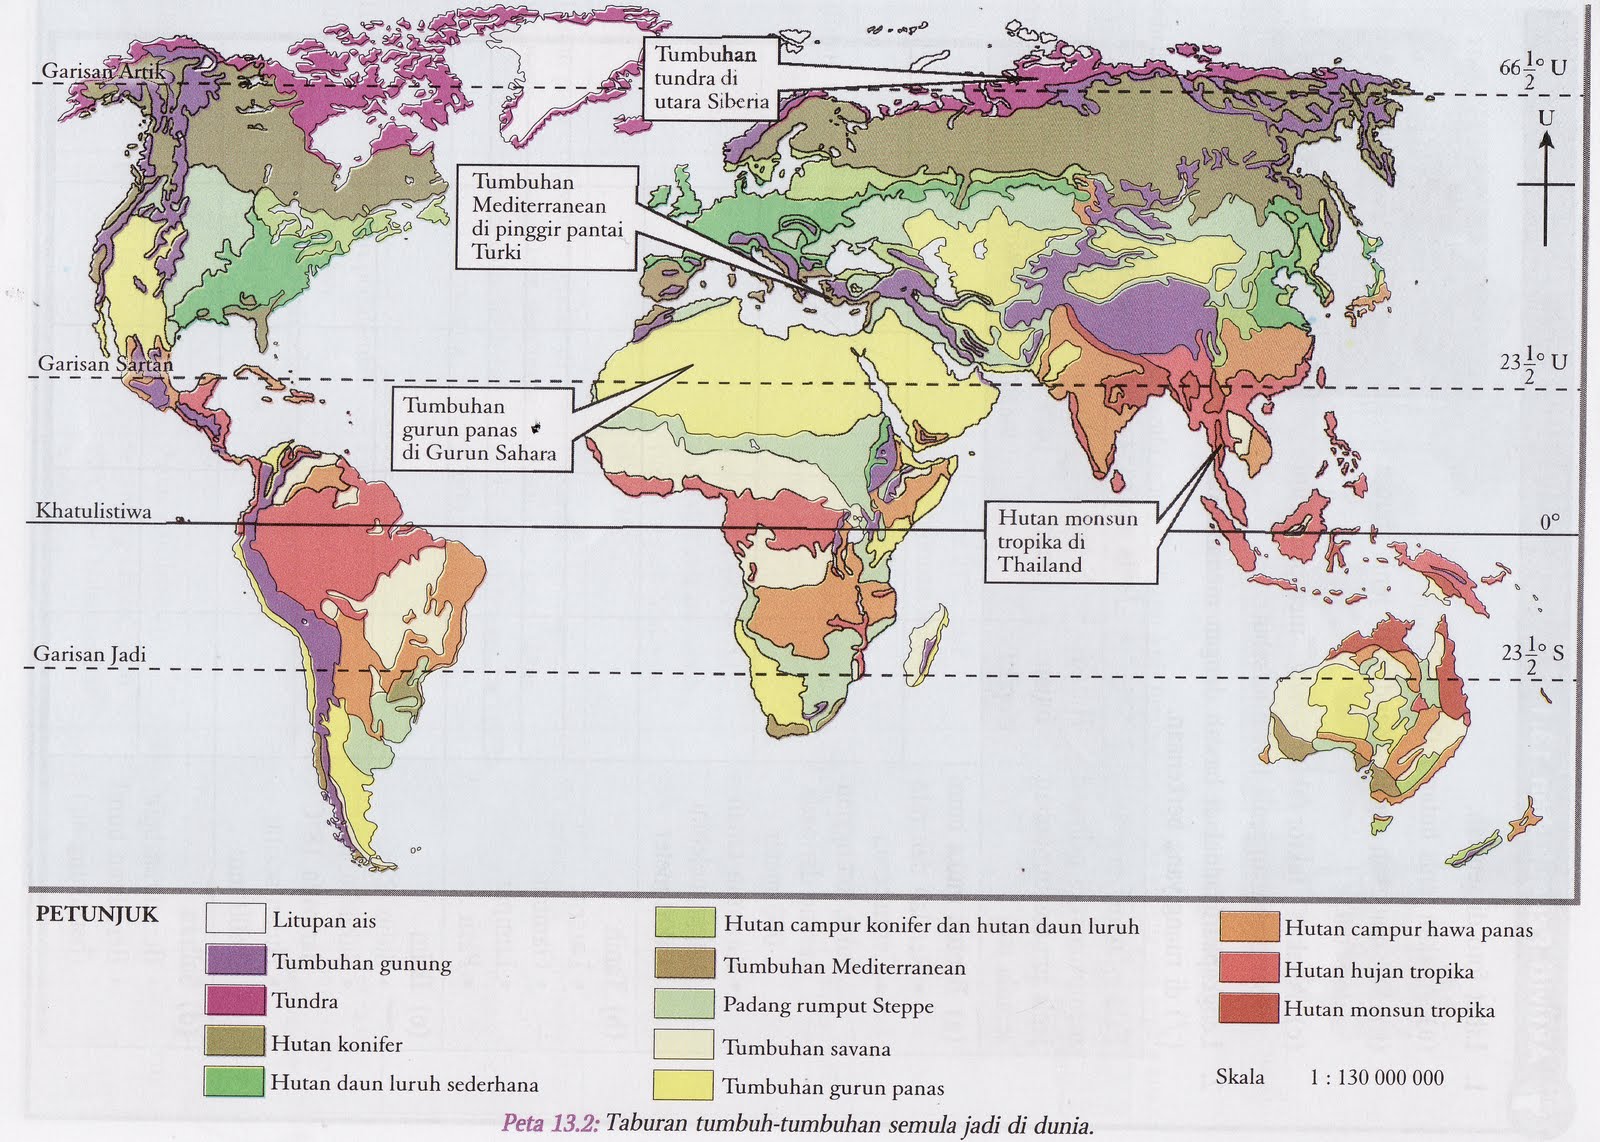  -tumbuhan semula jadi di dunia (Sumber: Buku teks Geografi Ting 1